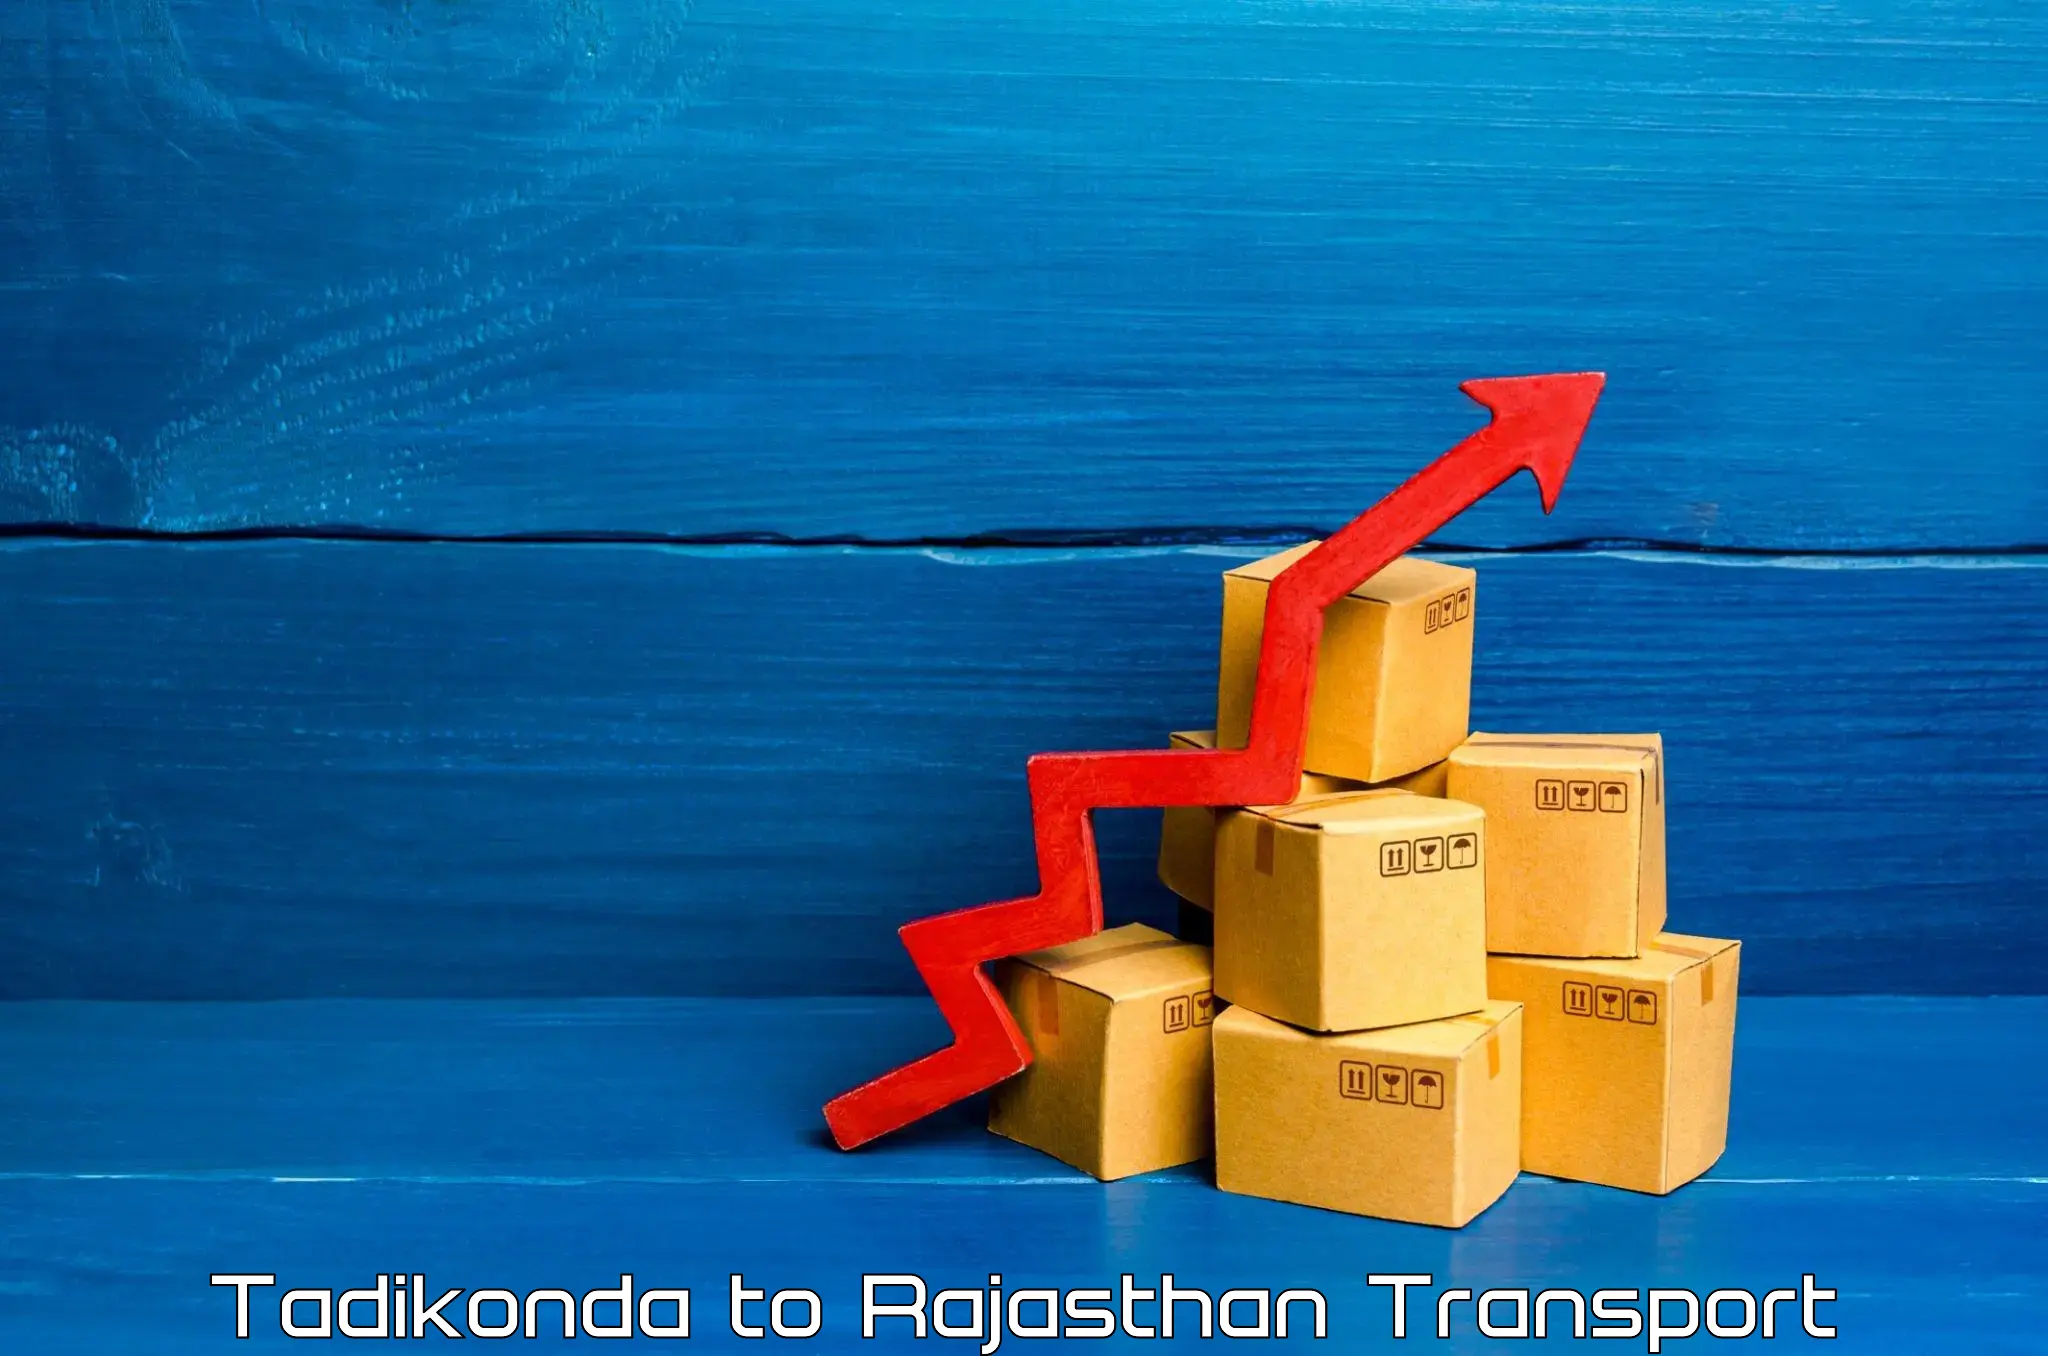 Air freight transport services Tadikonda to Bijainagar